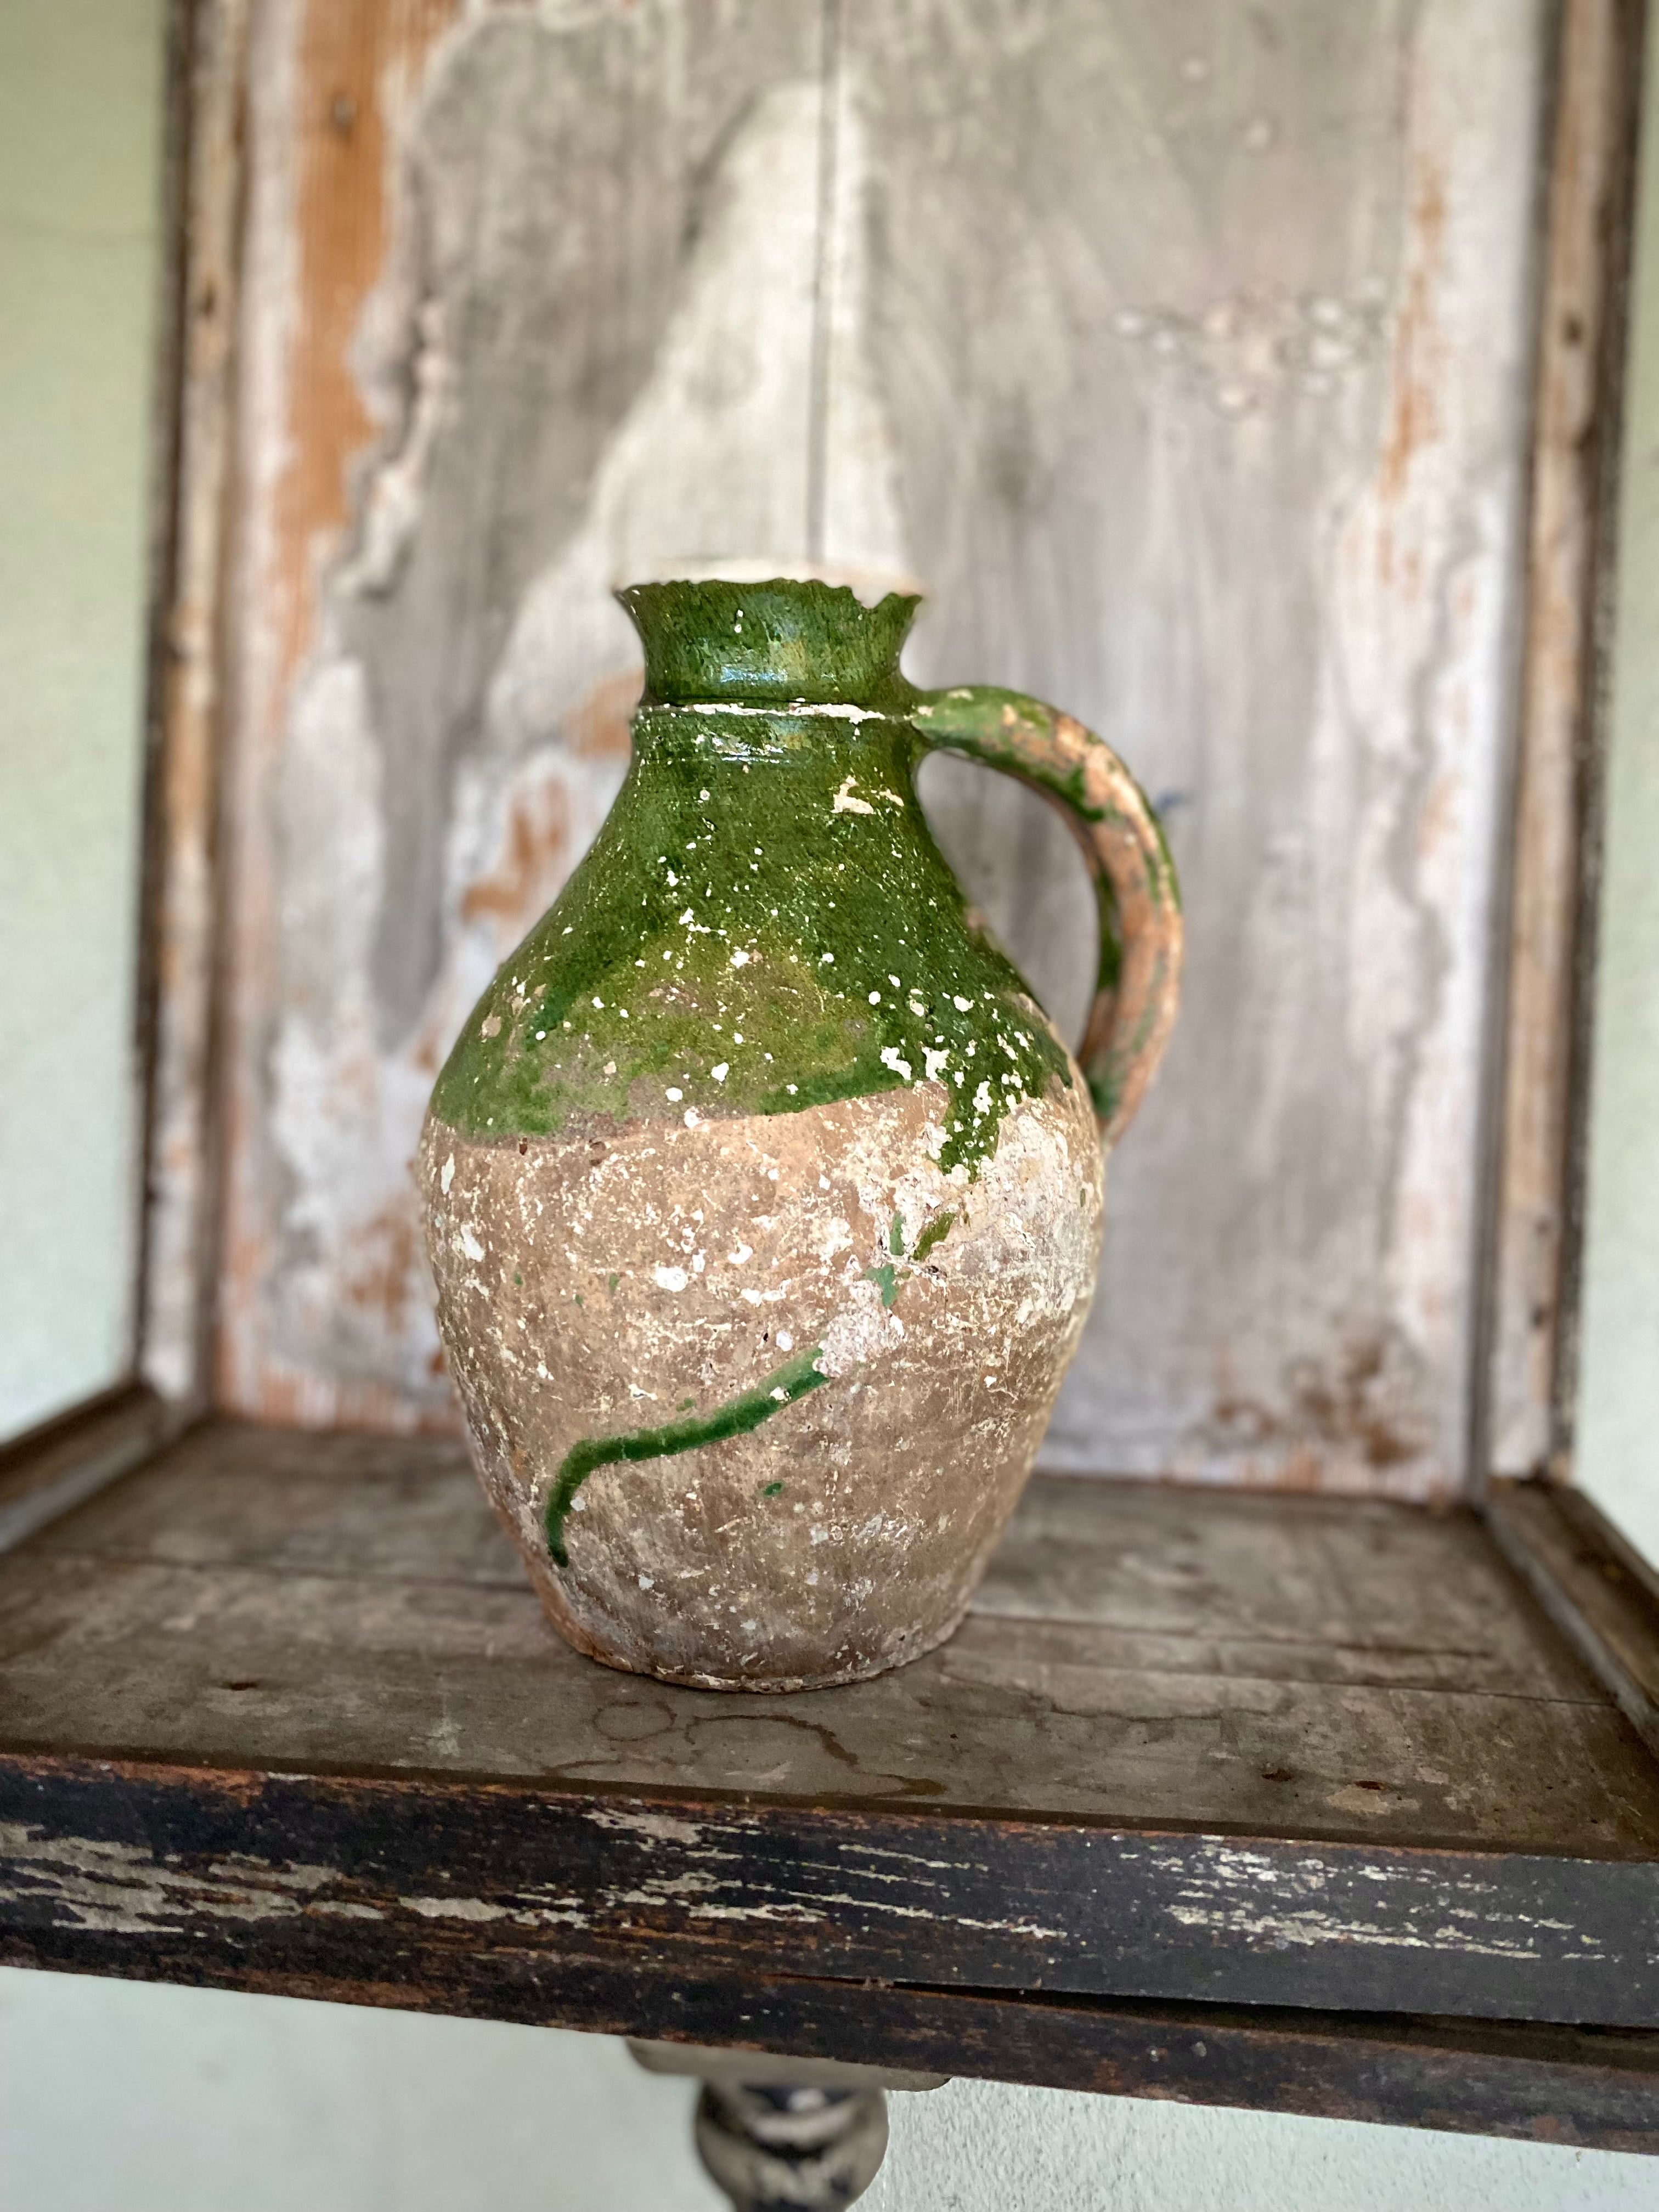 Antique 18th century jug